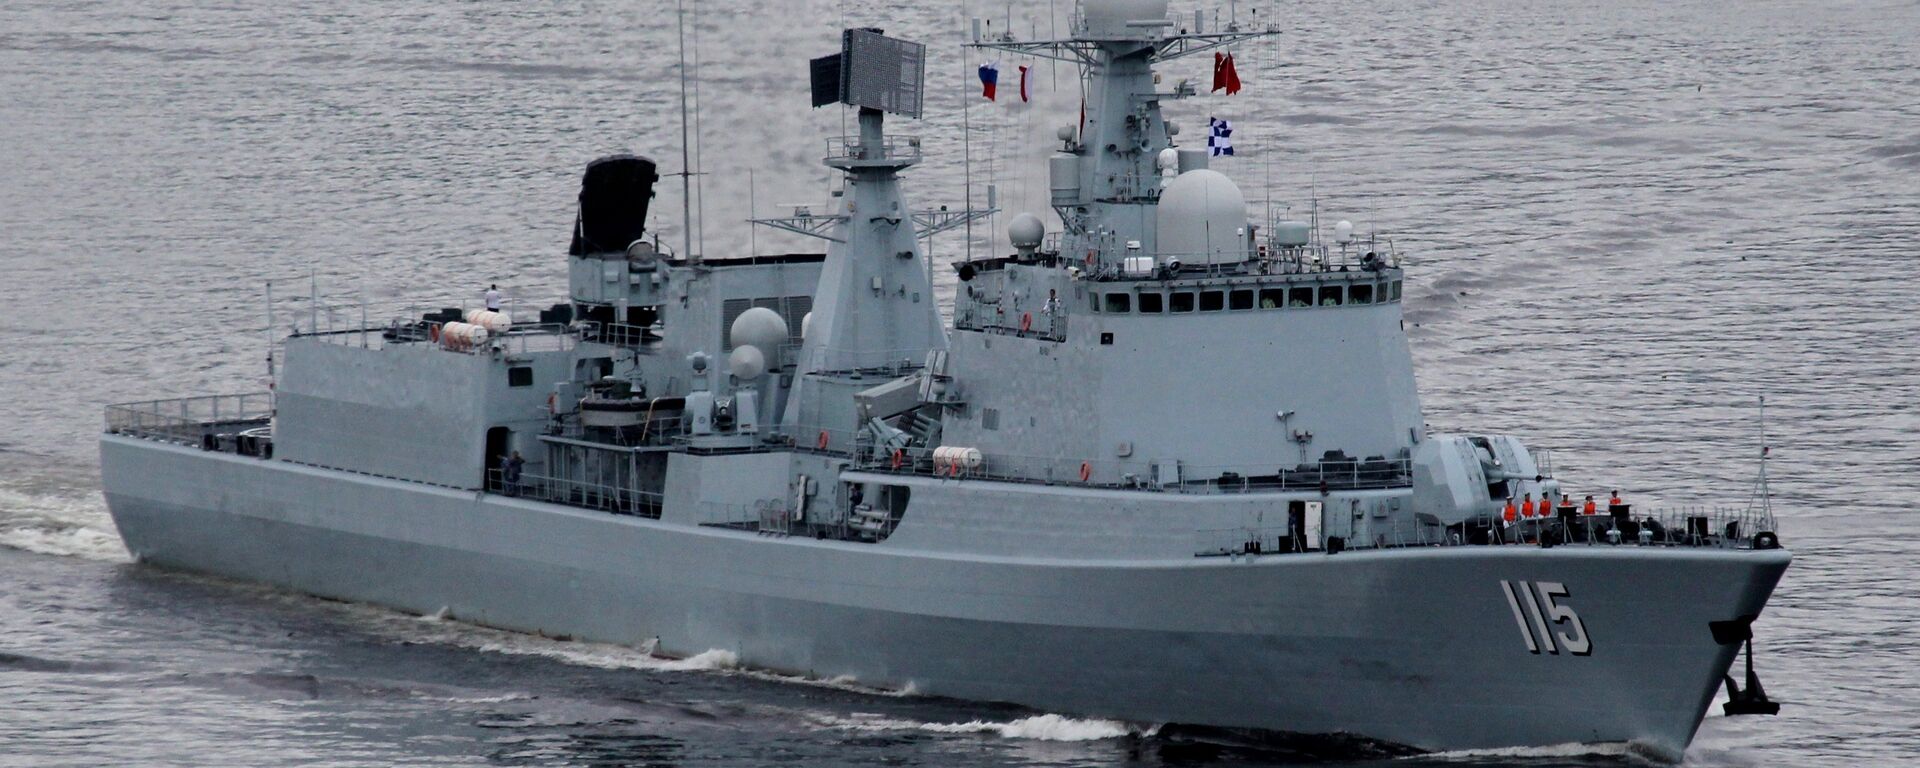 Un destructor de la Armada china sale a la mar durante los ejercicios navales entre China y Rusia en Vladivostok en 2015 (imagen referencial) - Sputnik Mundo, 1920, 07.12.2021